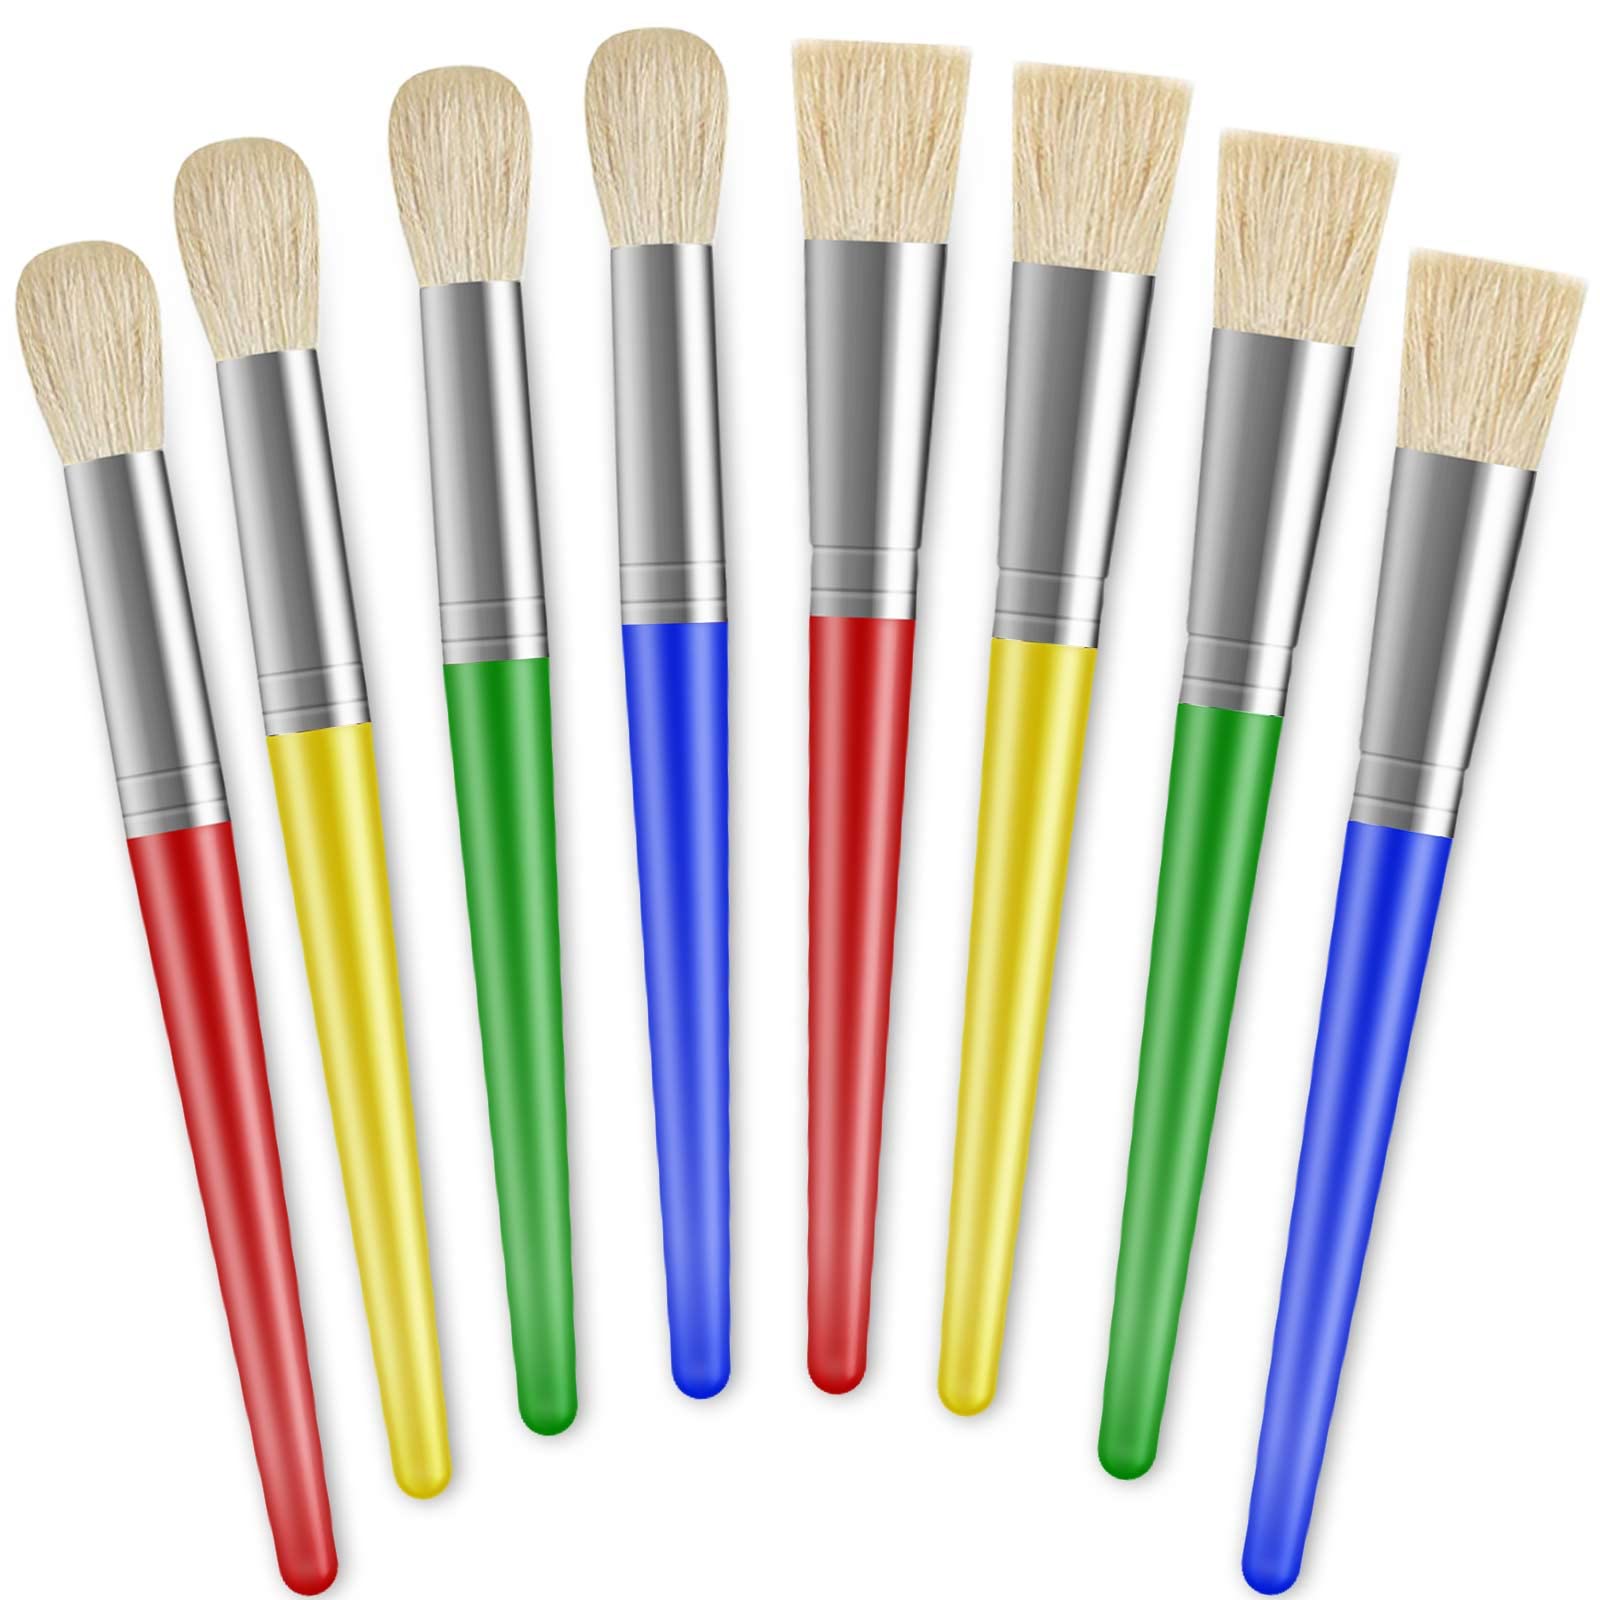 15 Best Preschool Paint Brushes For 2023